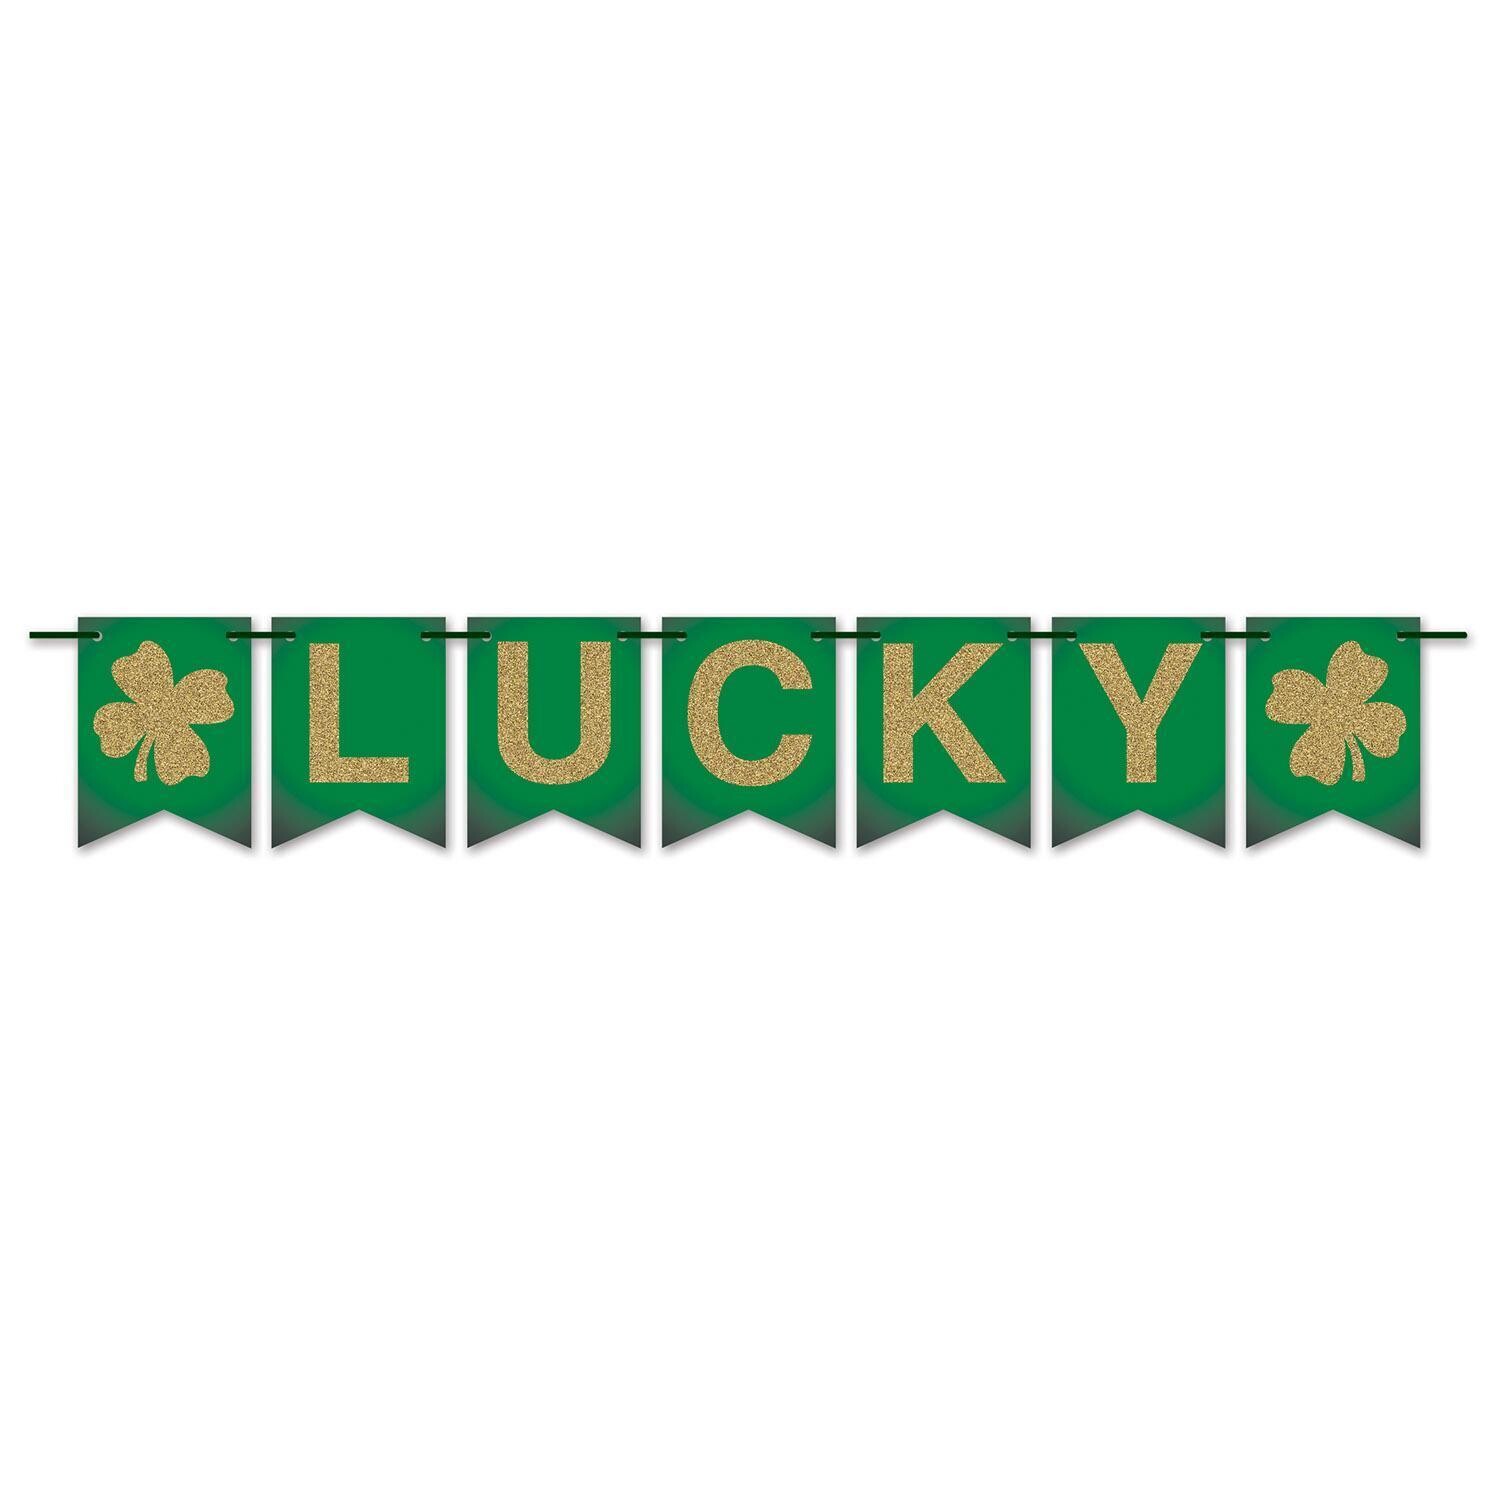 Green & Gold "Lucky" Pennant Banner 6" x 6ft+(AMZ)